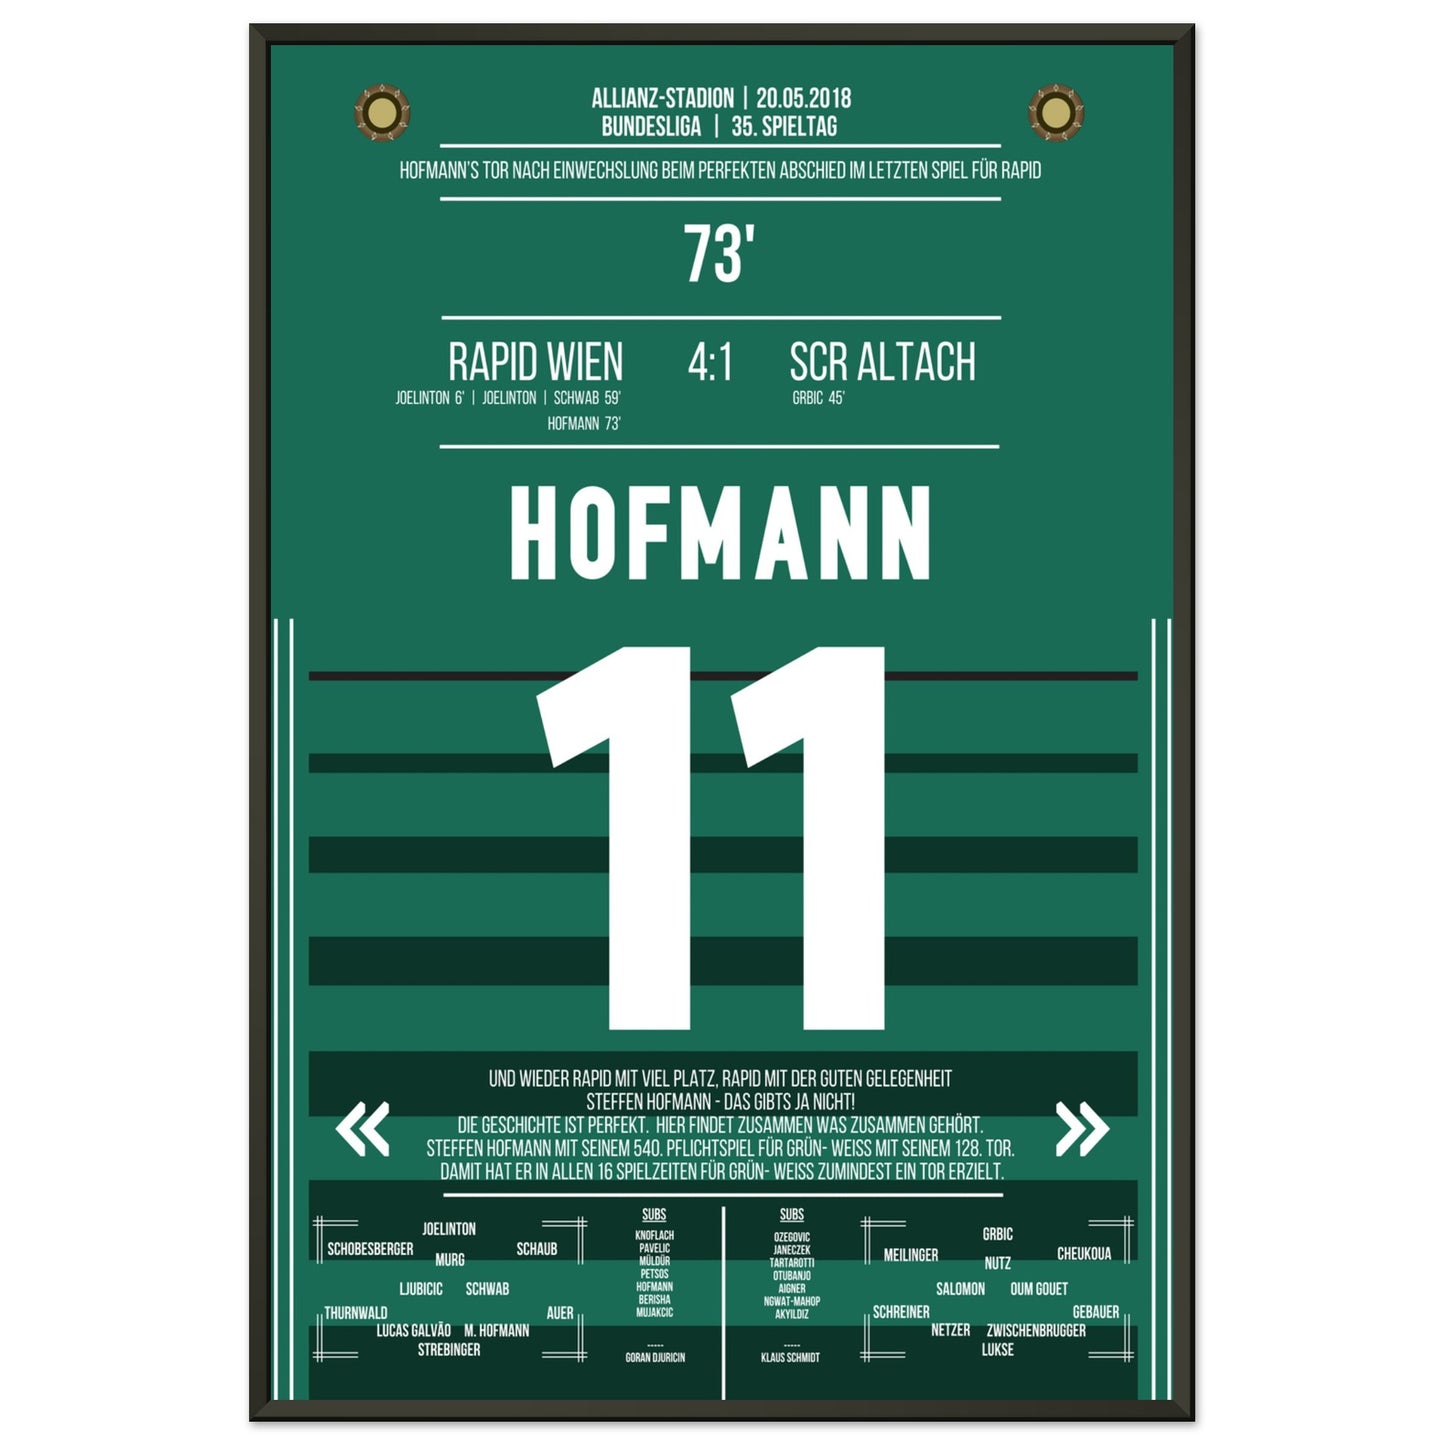 Hofmann's perfekter Abschied im letzten Spiel für Rapid